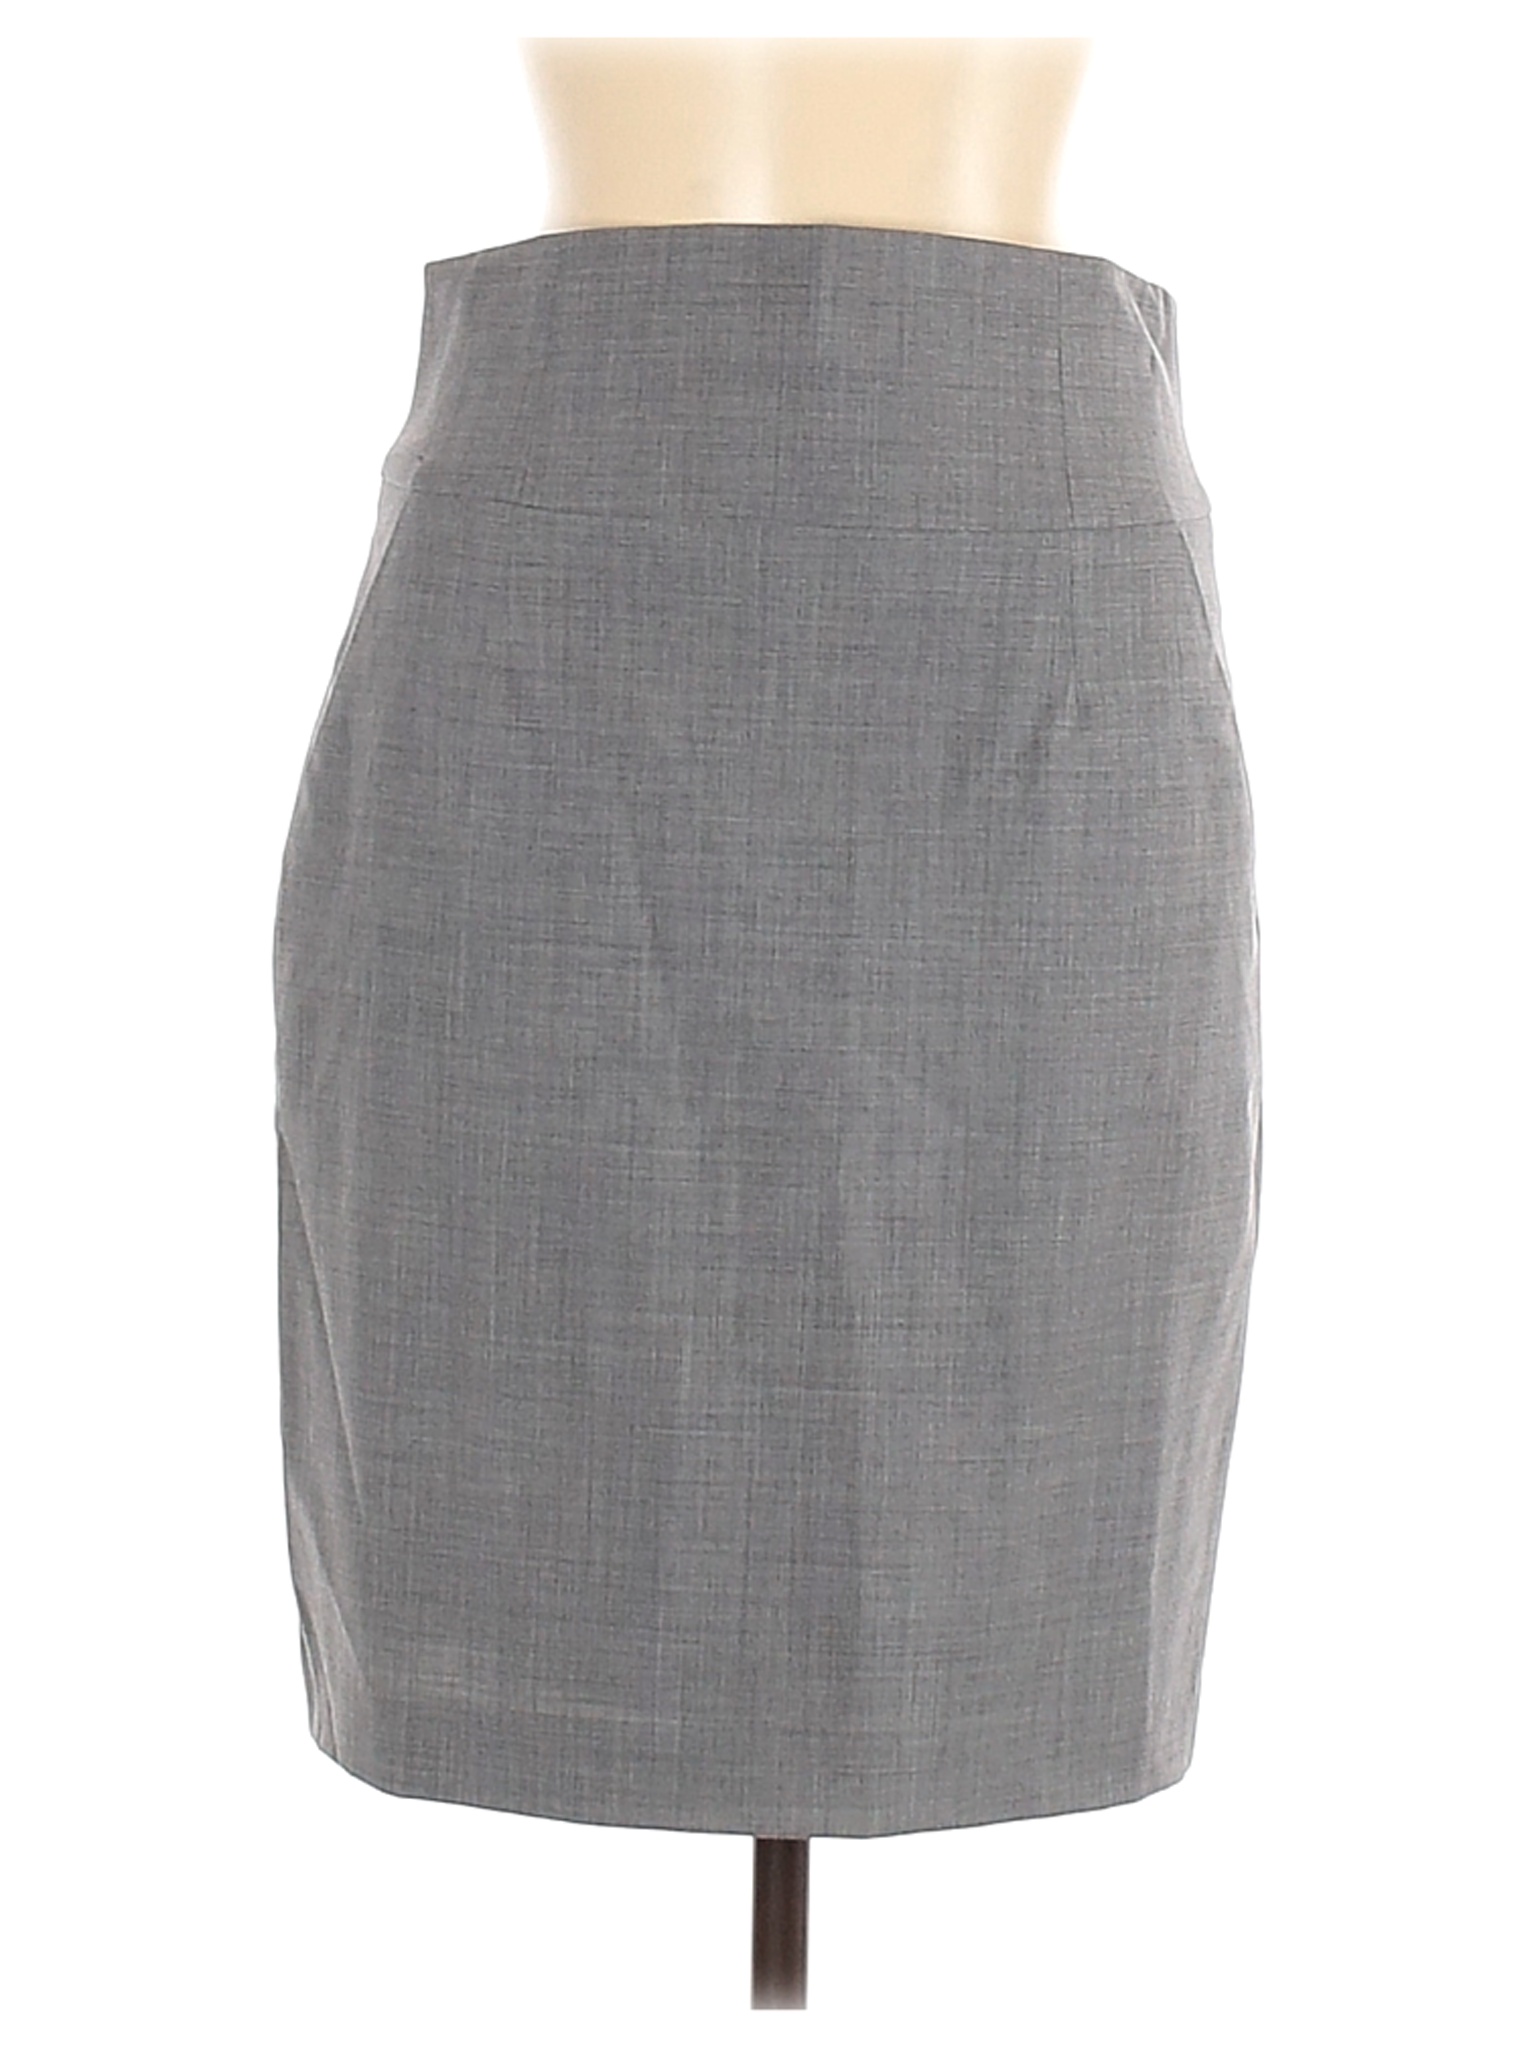 Banana Republic Women Gray Wool Skirt 6 | eBay